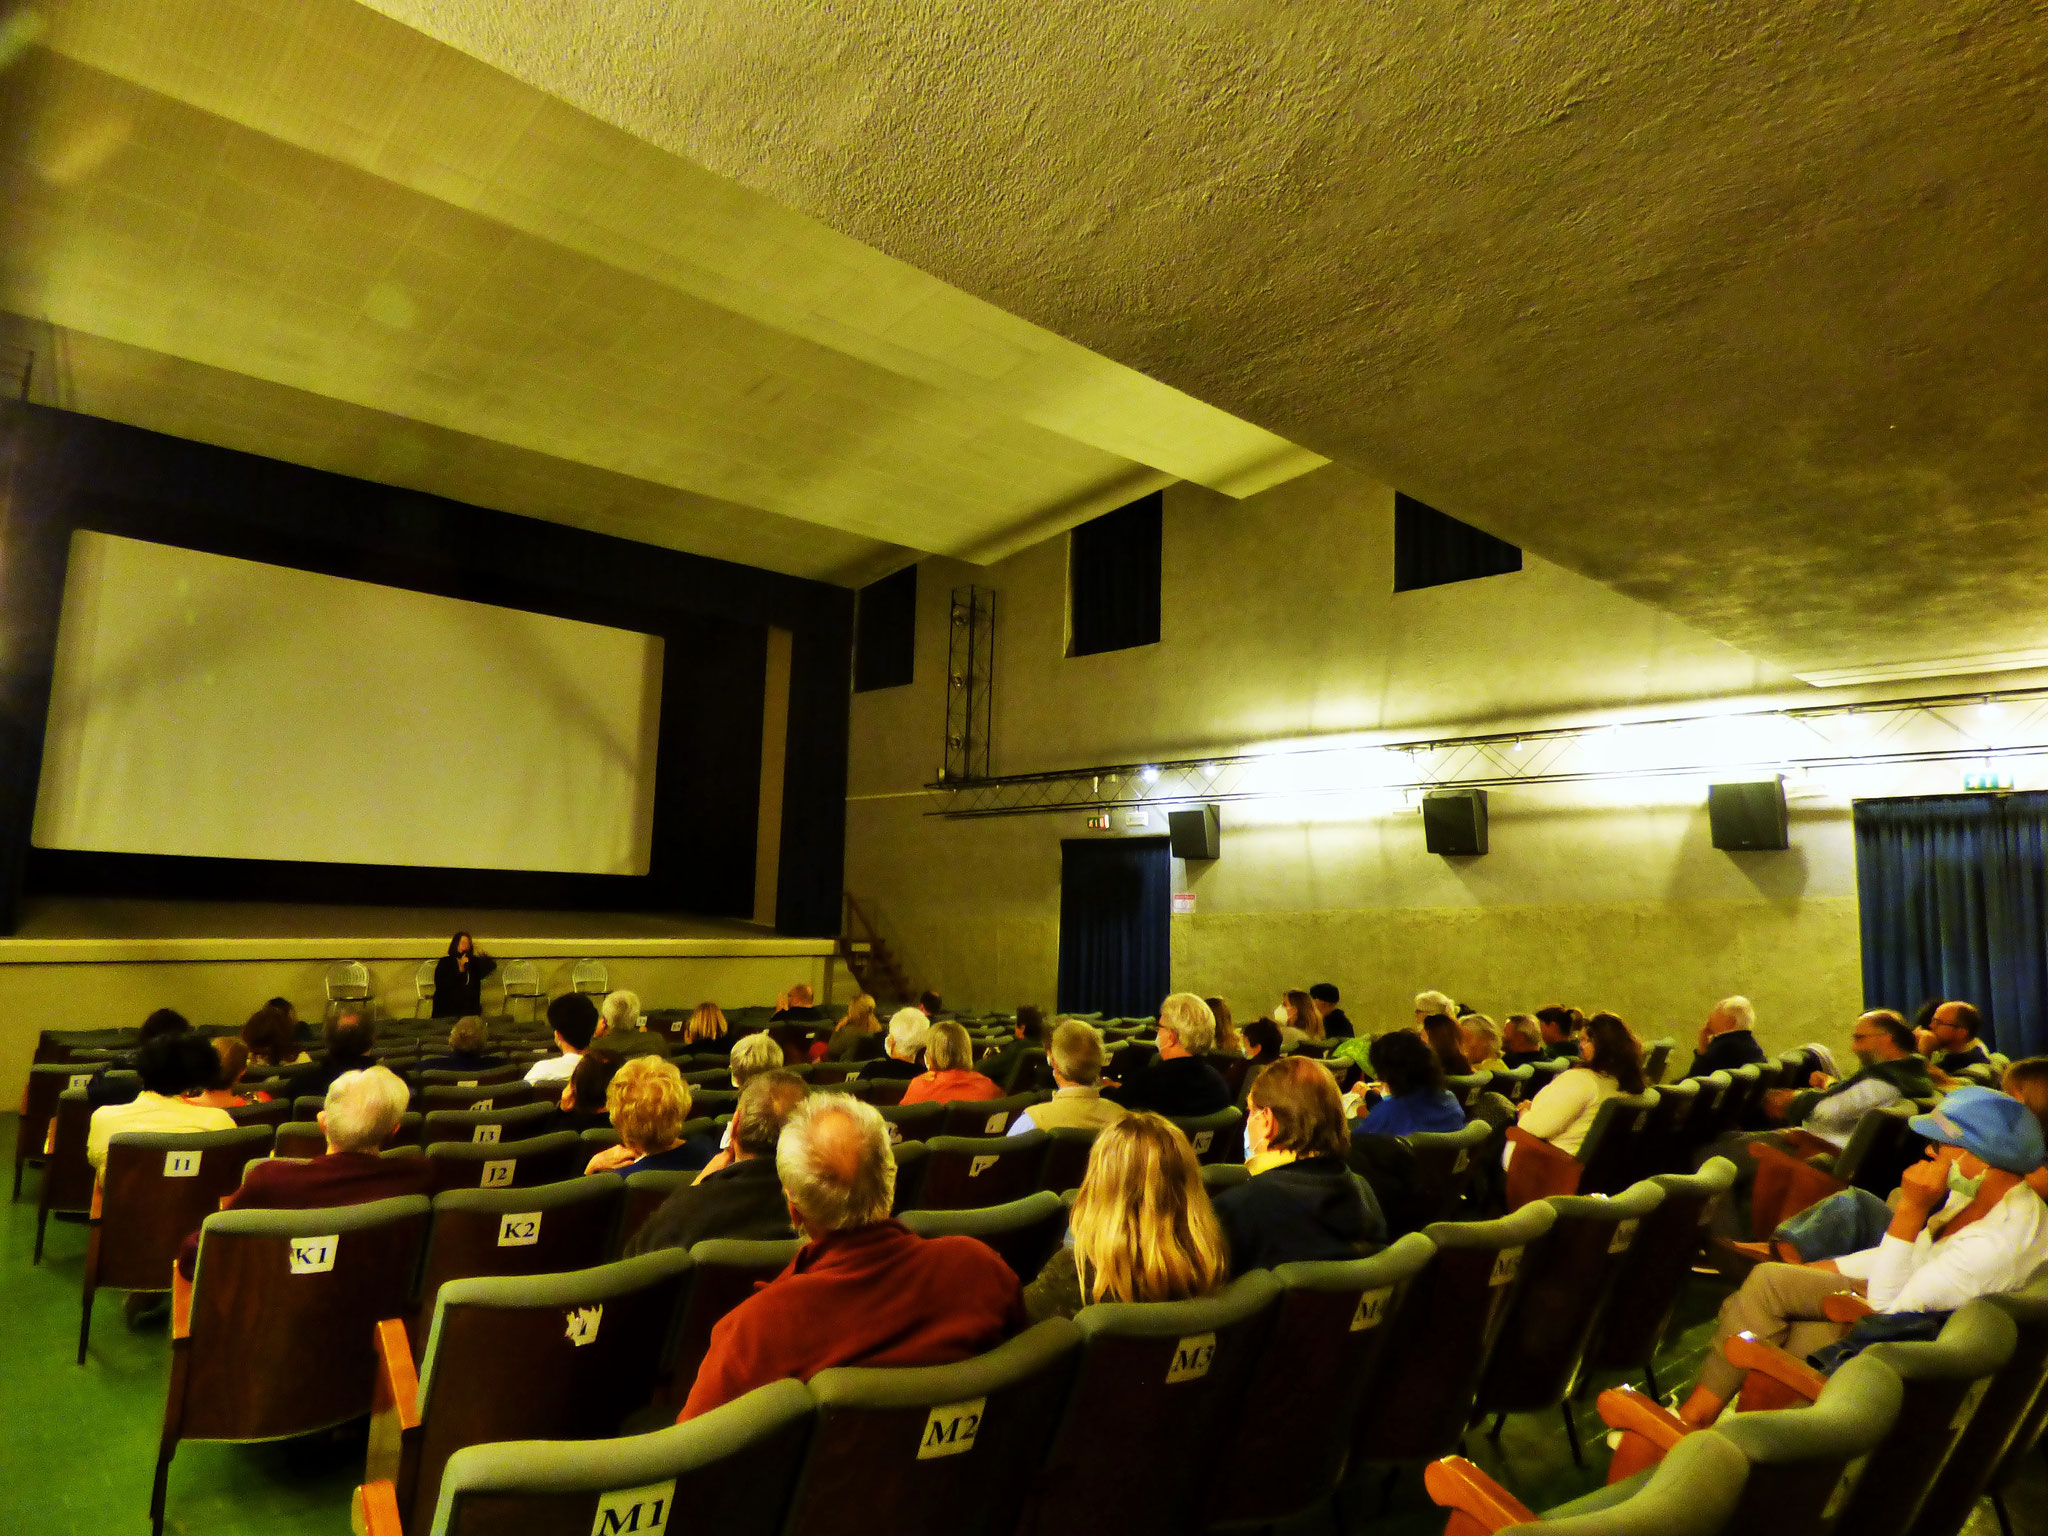 Cinema Le Grazie Bobbio FELLINI DEGLI SPIRITI Lunedì 31: ore 21:15 – serata evento con la partecipazione di Lella Ravasi Bellocchio ‪#‎FelliniDegliSpiriti‬‬‬‬‬‬